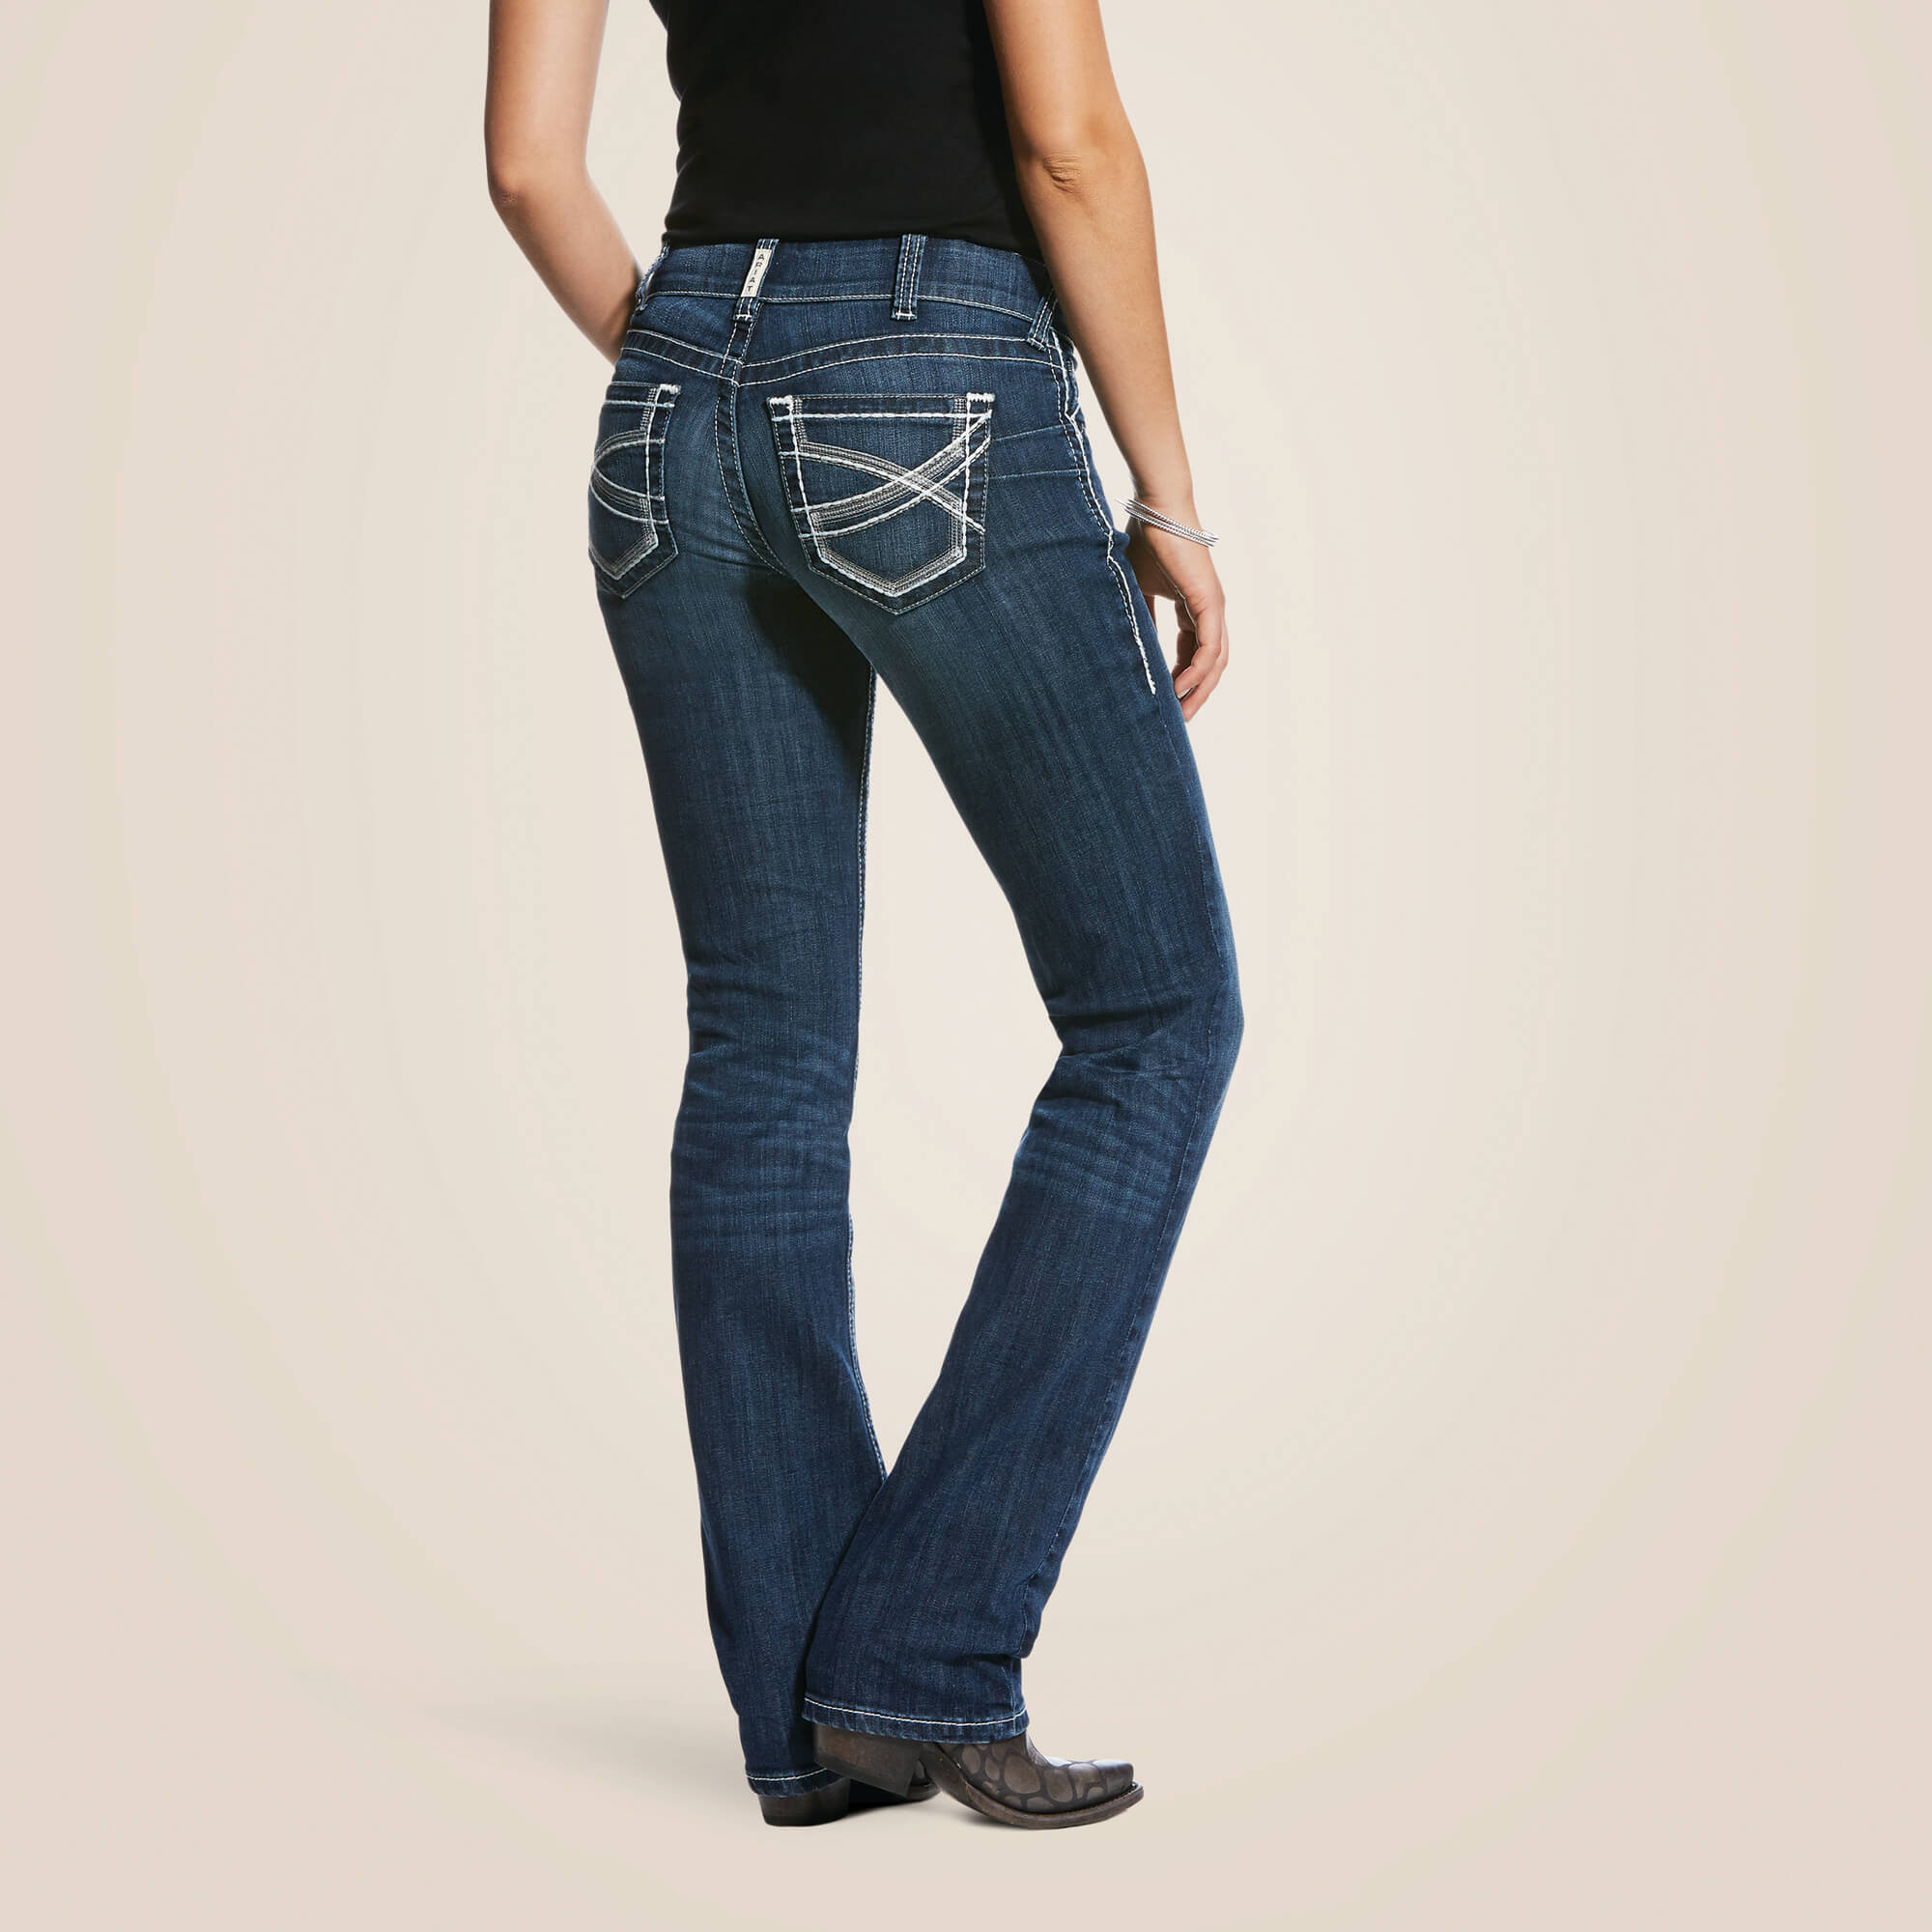 jeans western équitation pour femme de marque ariat